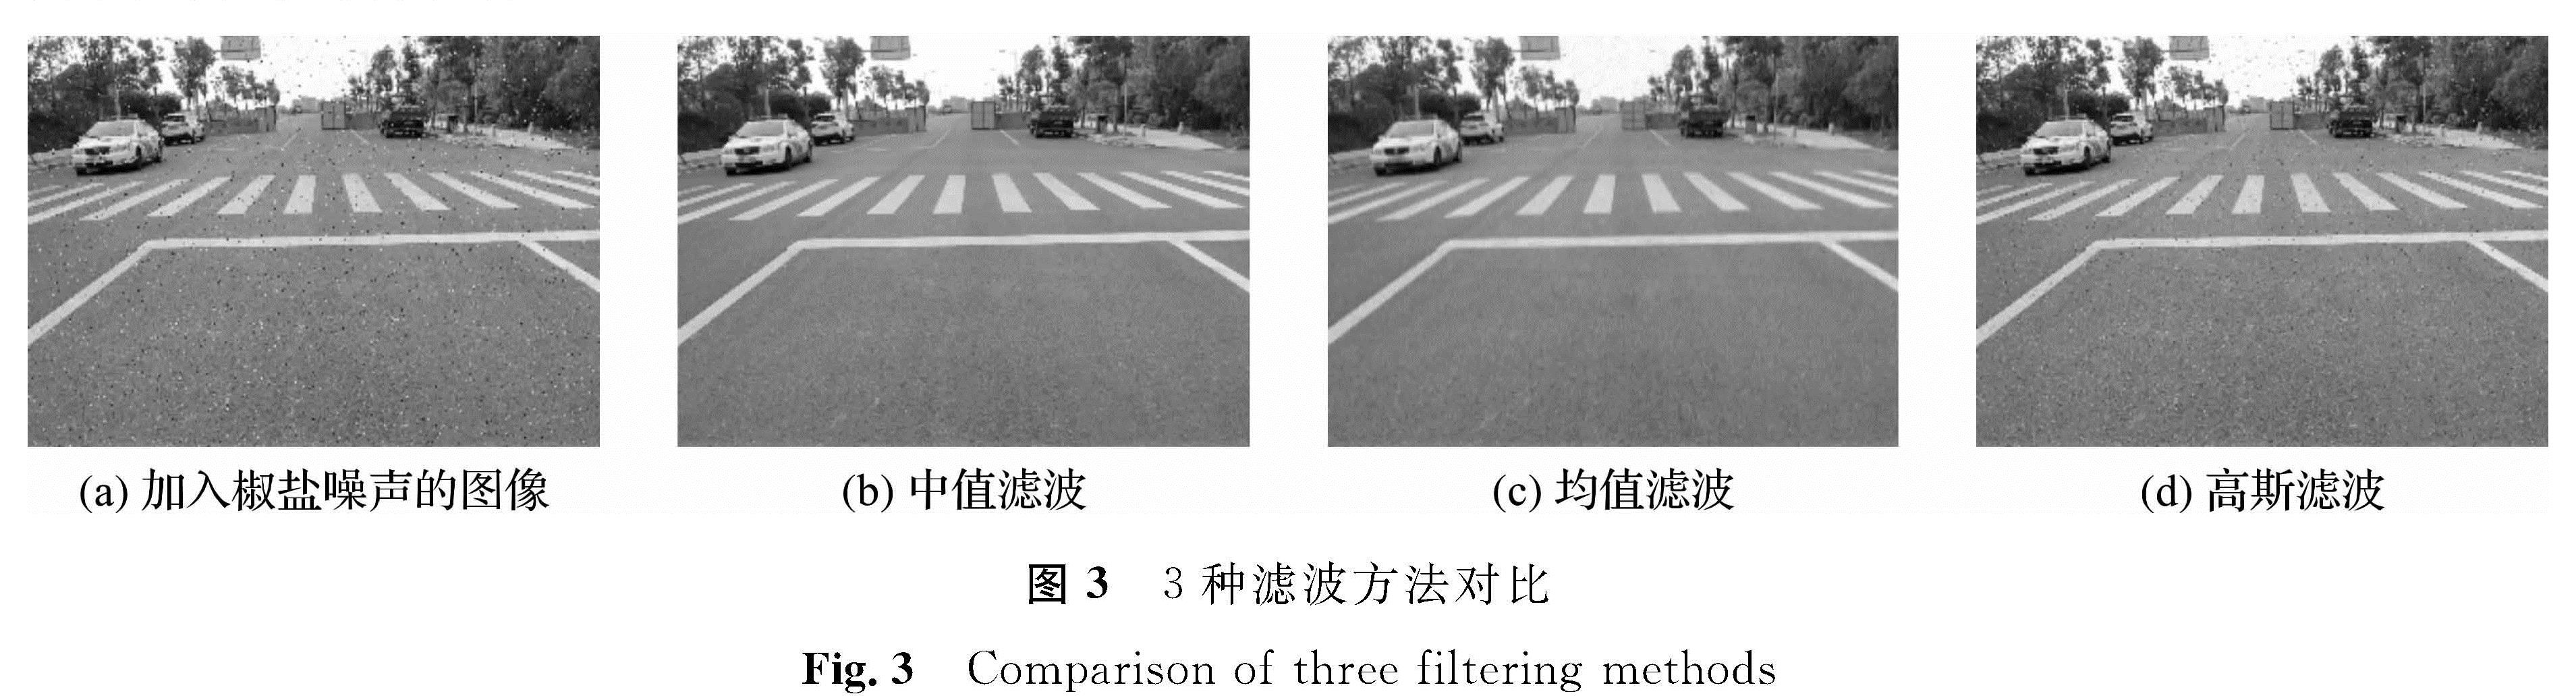 图3 3种滤波方法对比<br/>Fig.3 Comparison of three filtering methods